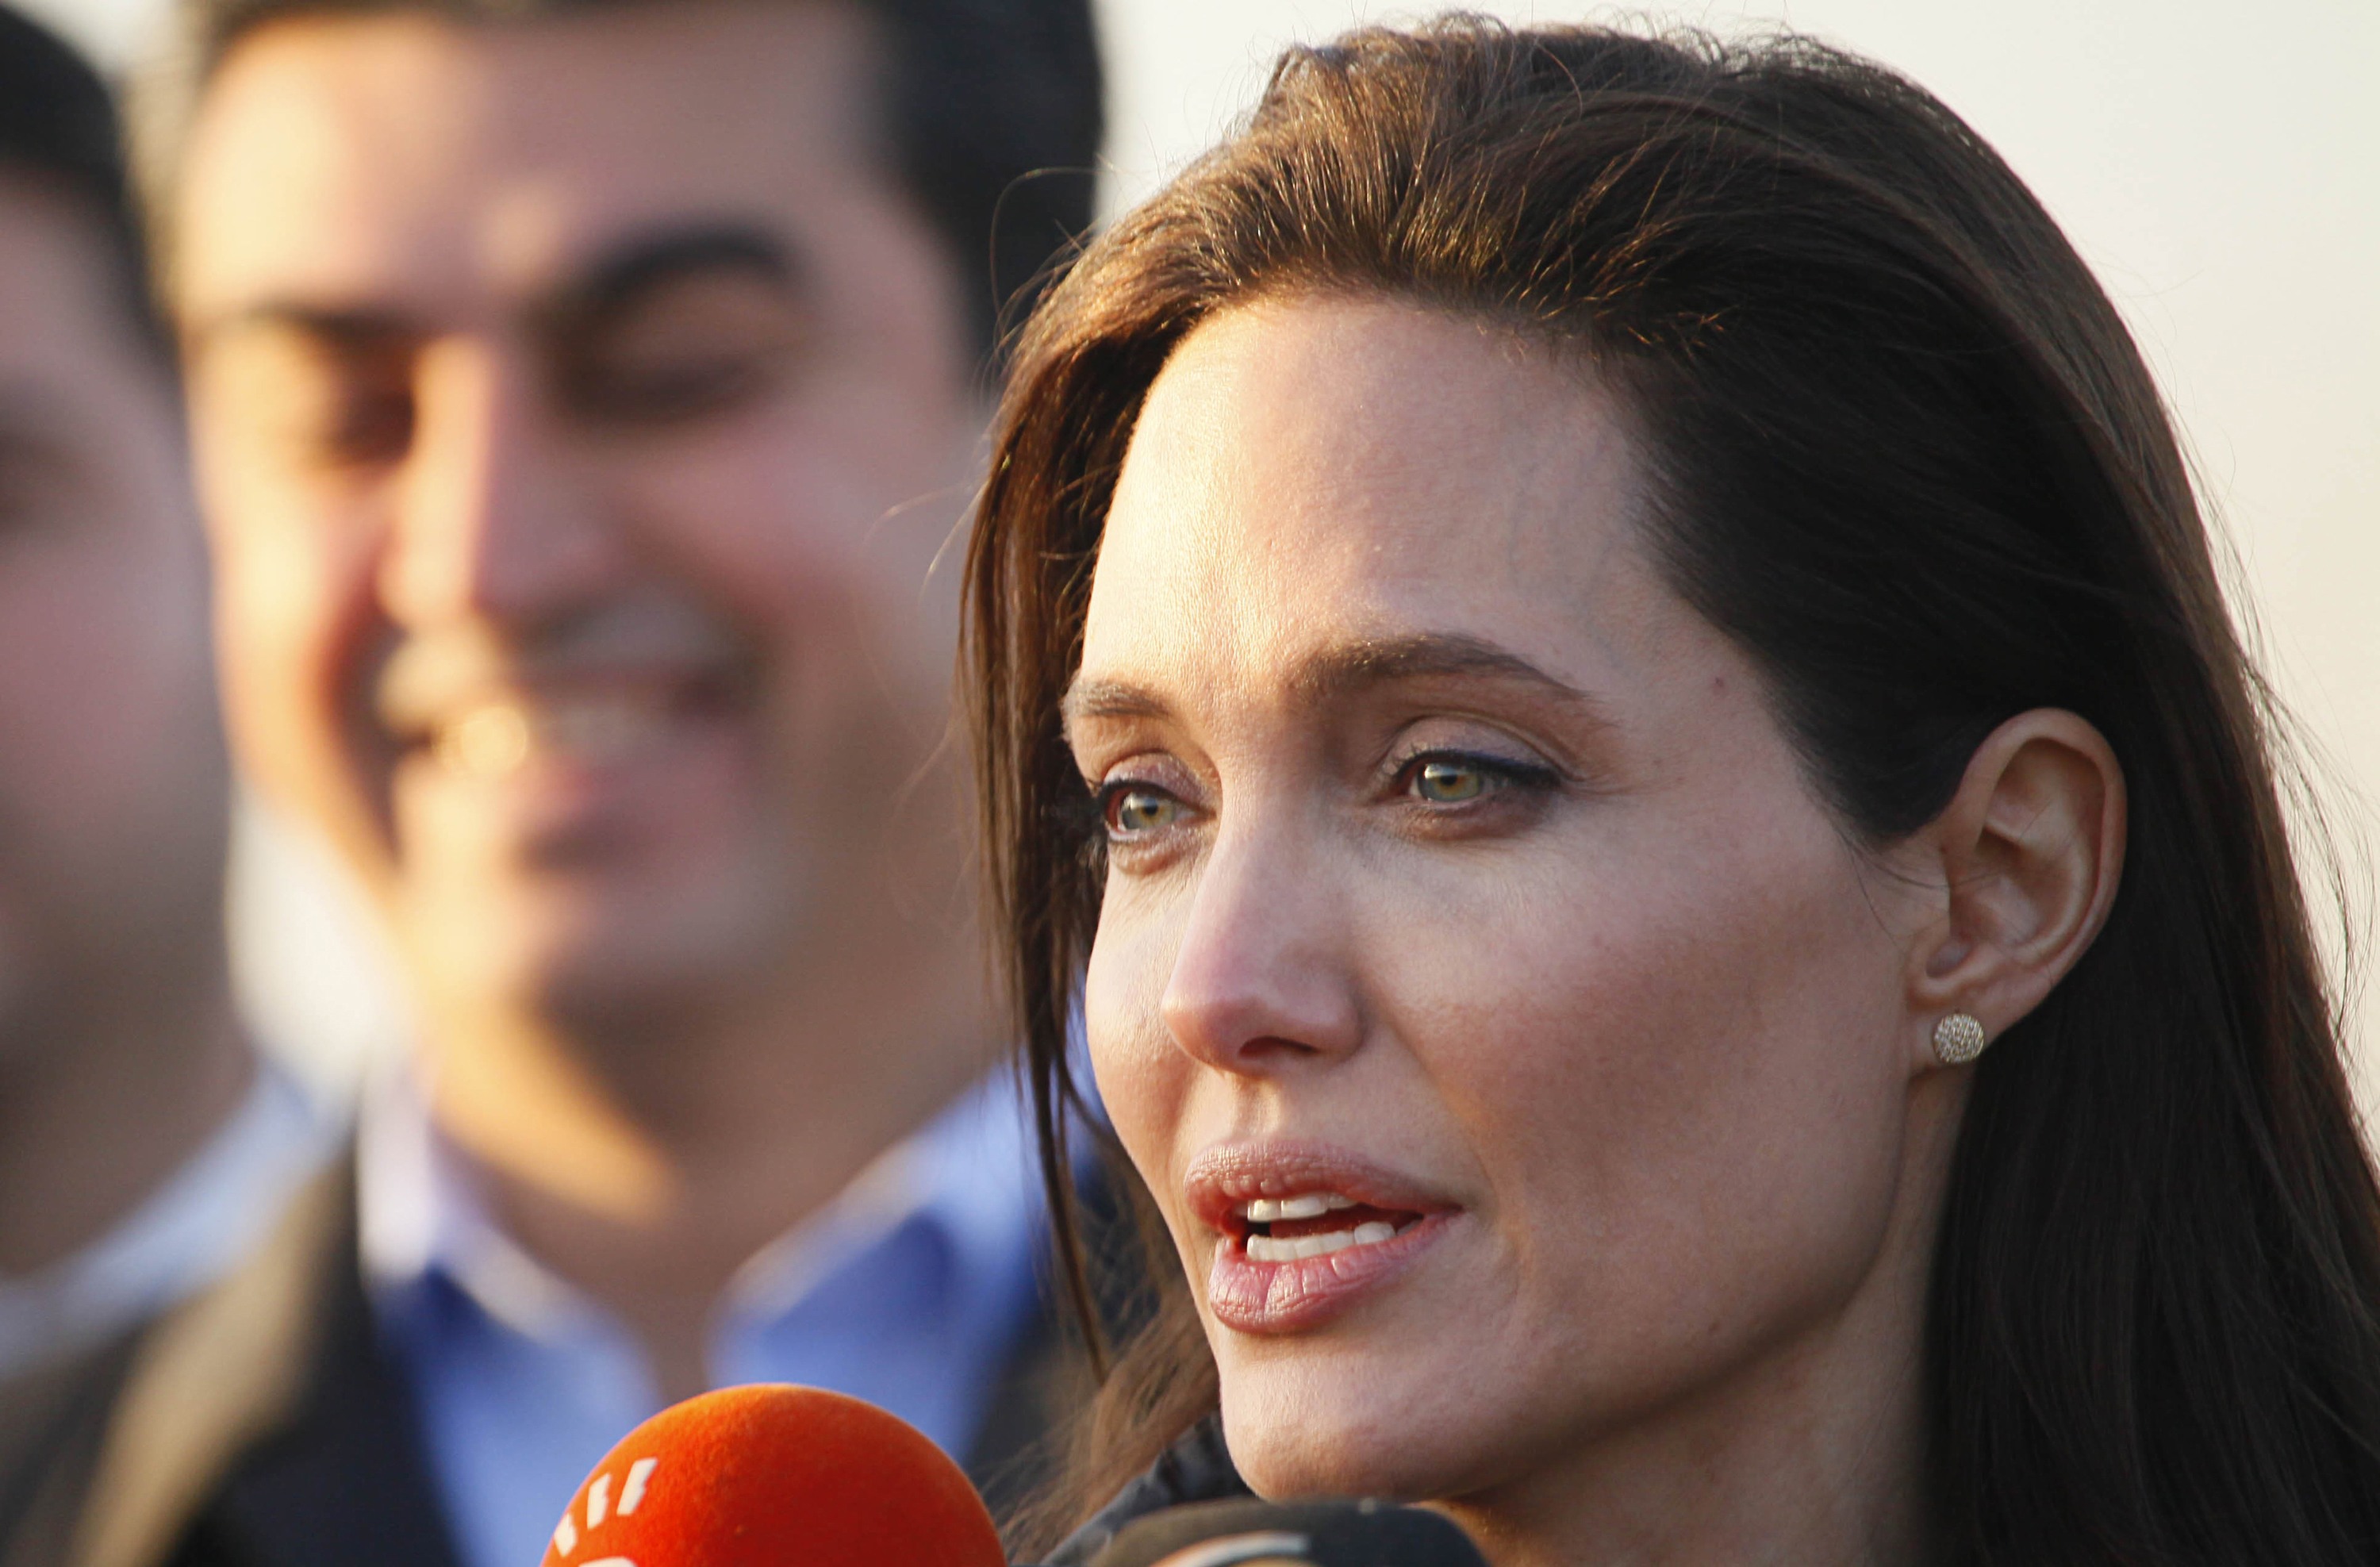 Angelina Jolie es la mujer más admirada del mundo